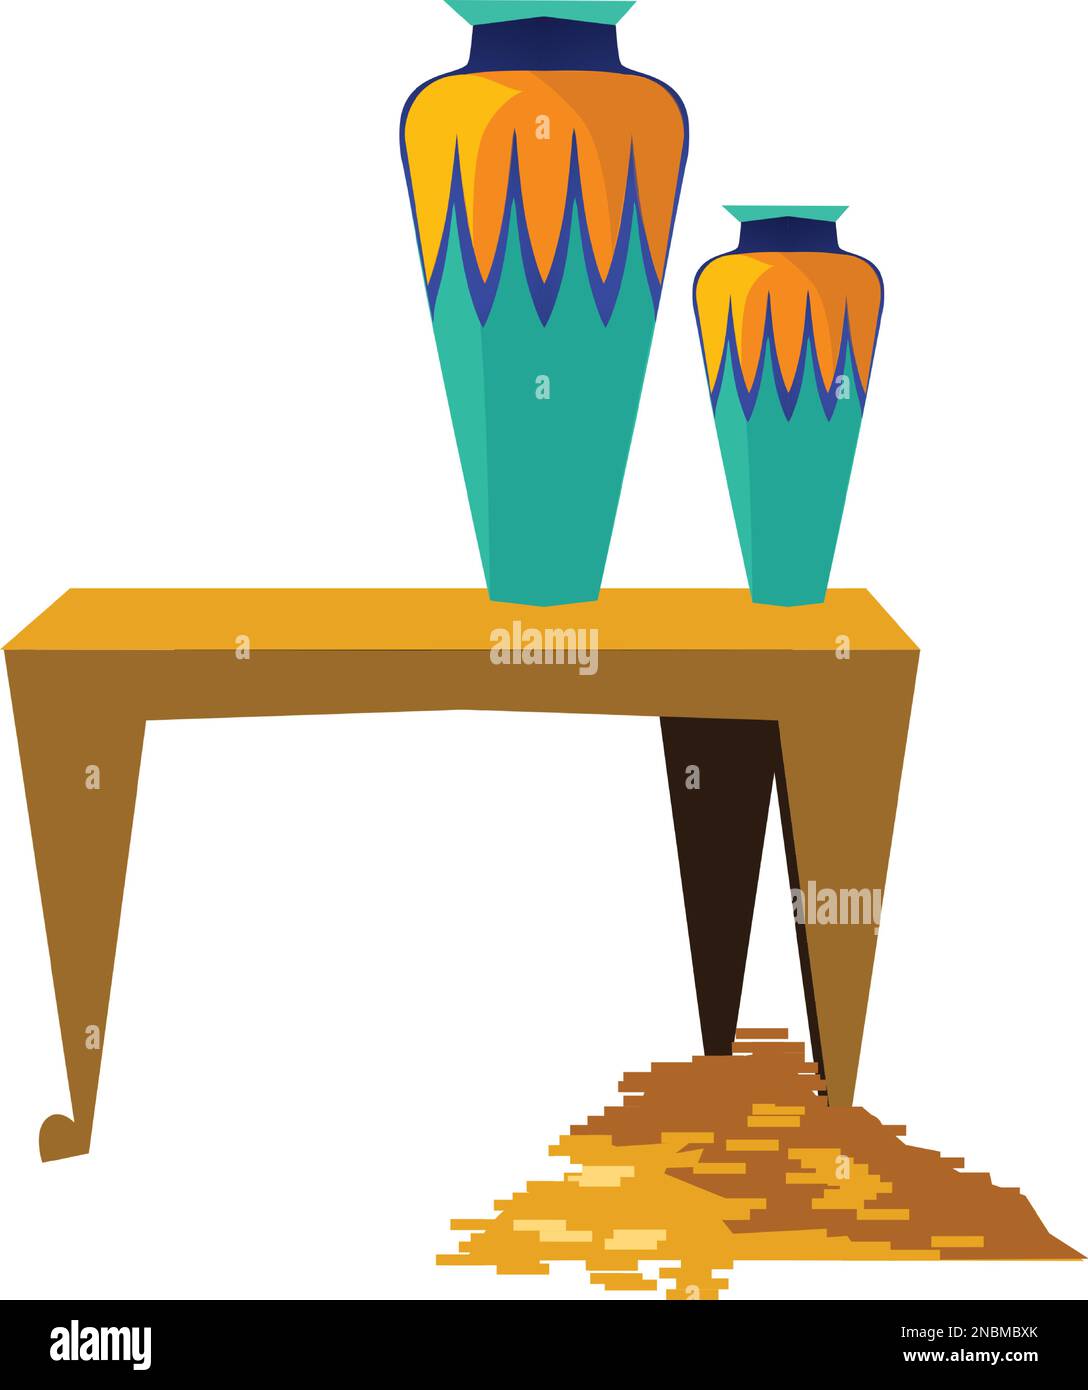 Set di cartoni animati vettoriali dell'antico Egitto. Collezione di simboli della cultura egiziana, tavolo con vaso sacrificale e tesoro, monete d'oro, isolato su sfondo bianco Illustrazione Vettoriale